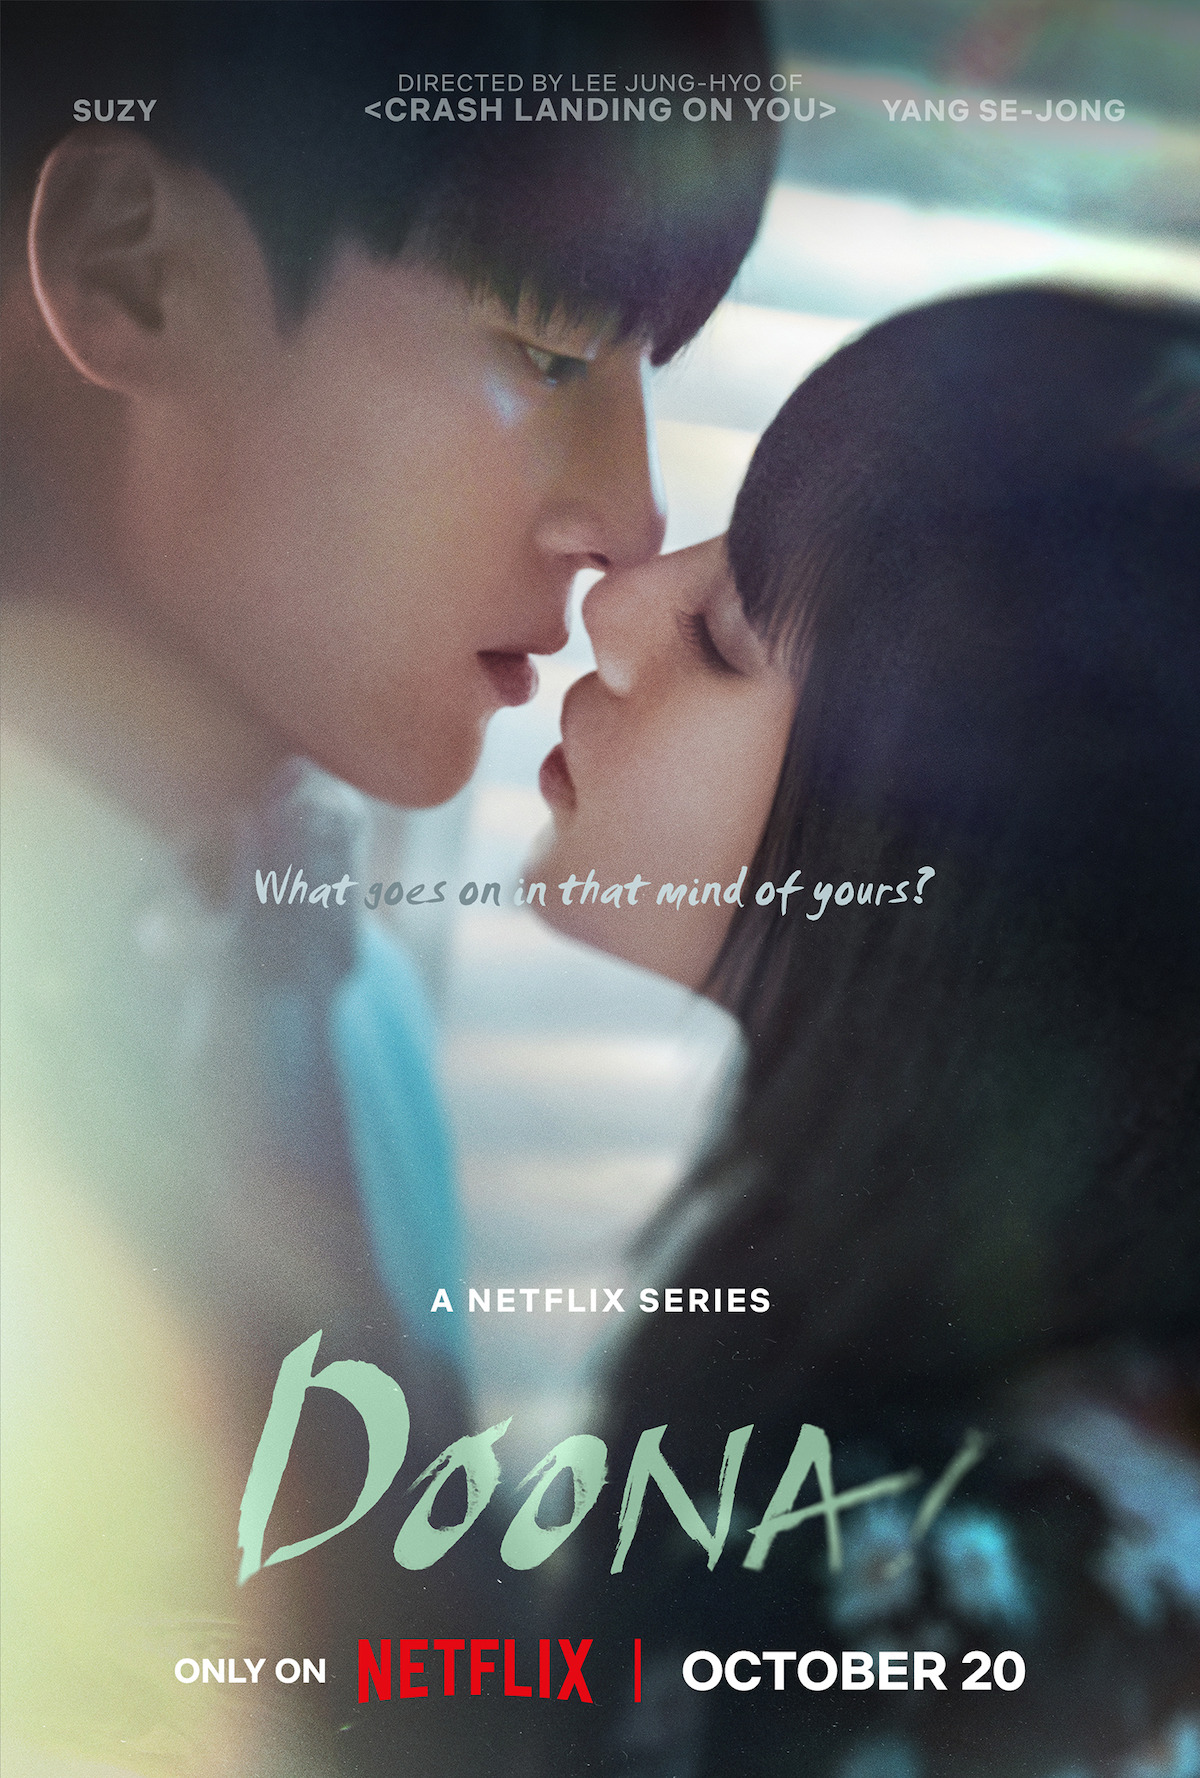 Netflix Series 'Doona!' Starring Suzy Set to Release in October